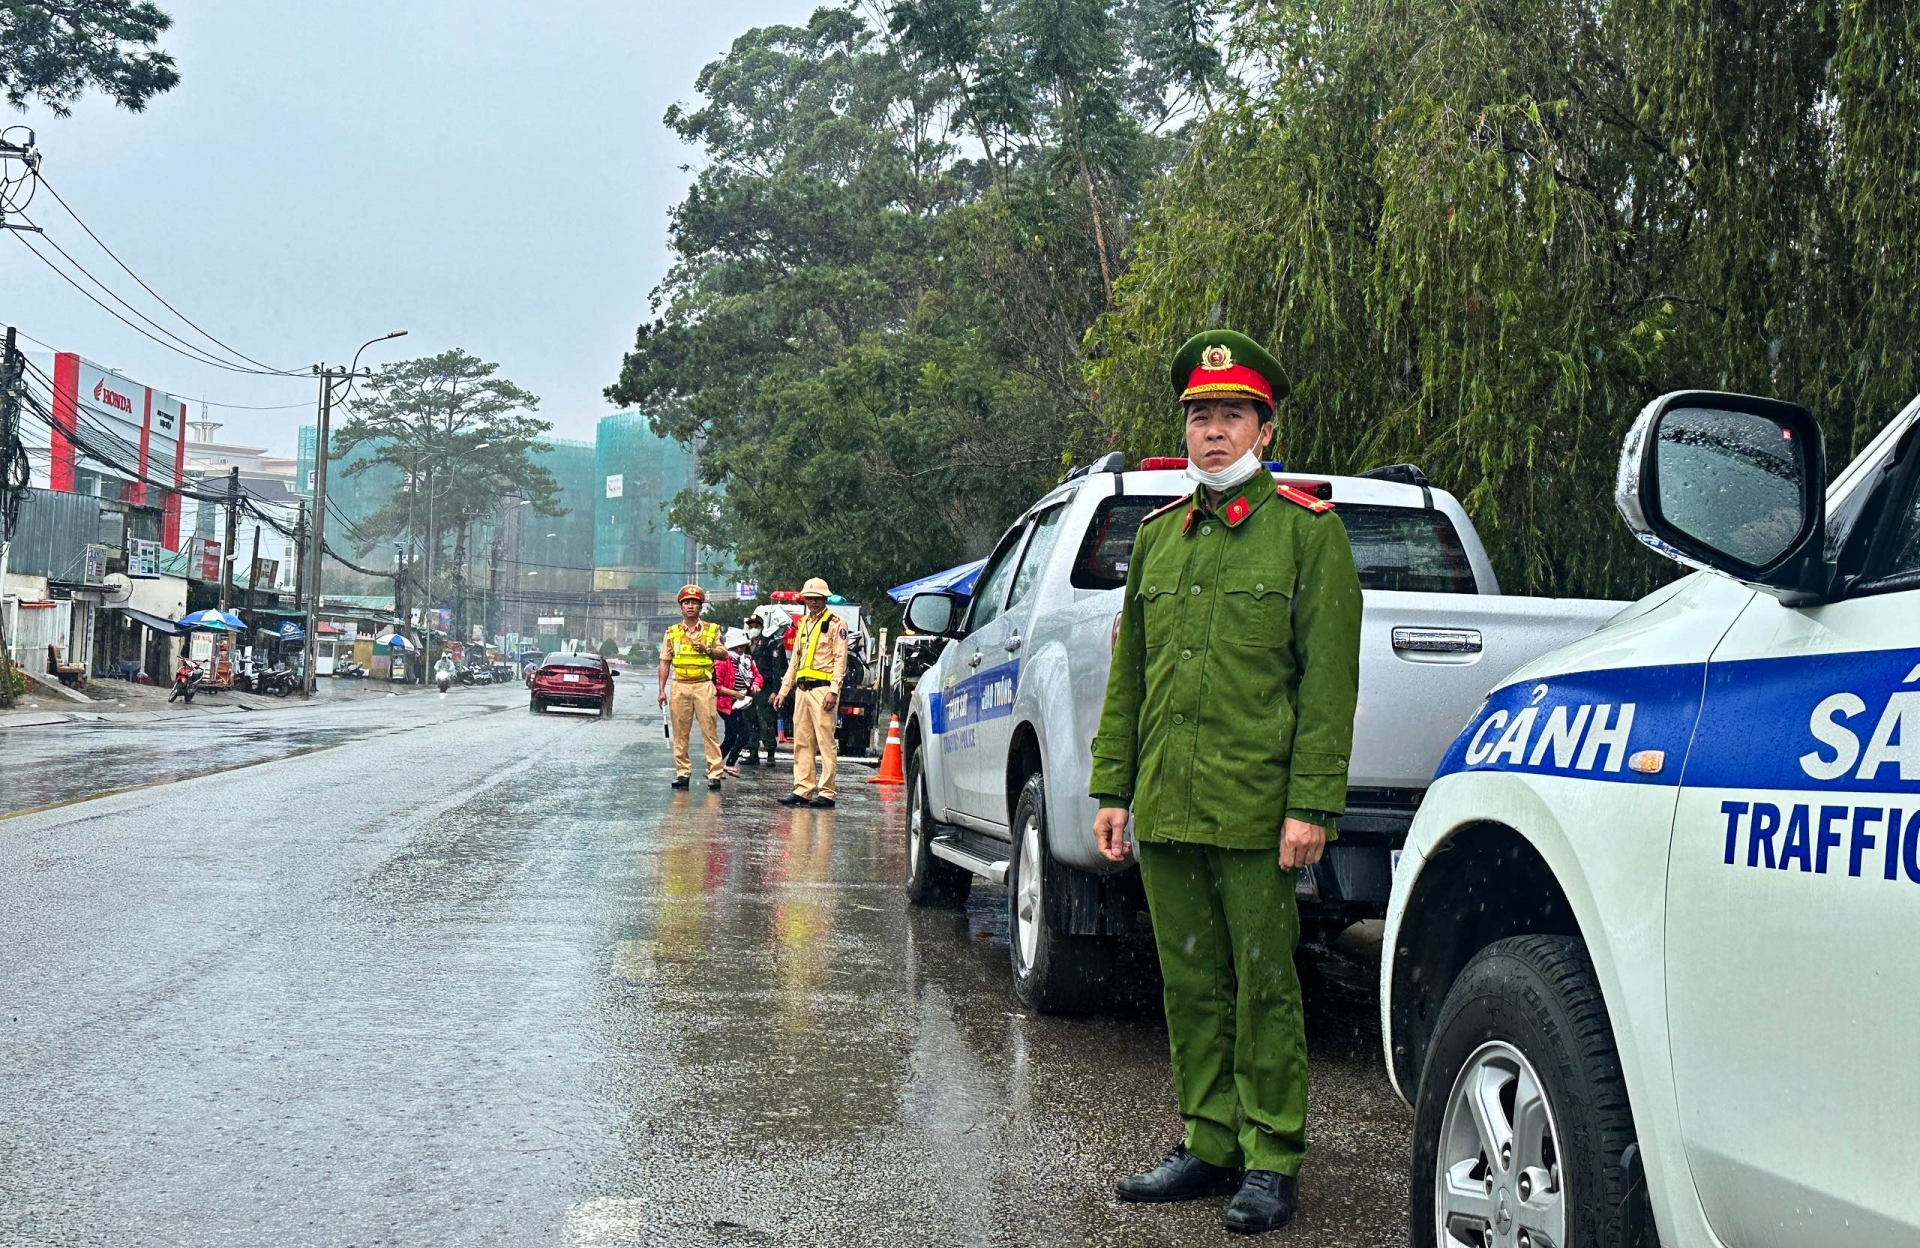 Cán bộ, chiến sĩ Công an Đà Lạt tuần tra, xử lý vi phạm giao thông khép kín, liên tục 24/24 giờ trên Quốc lộ 20, kể cả thời điểm thời tiết xấu